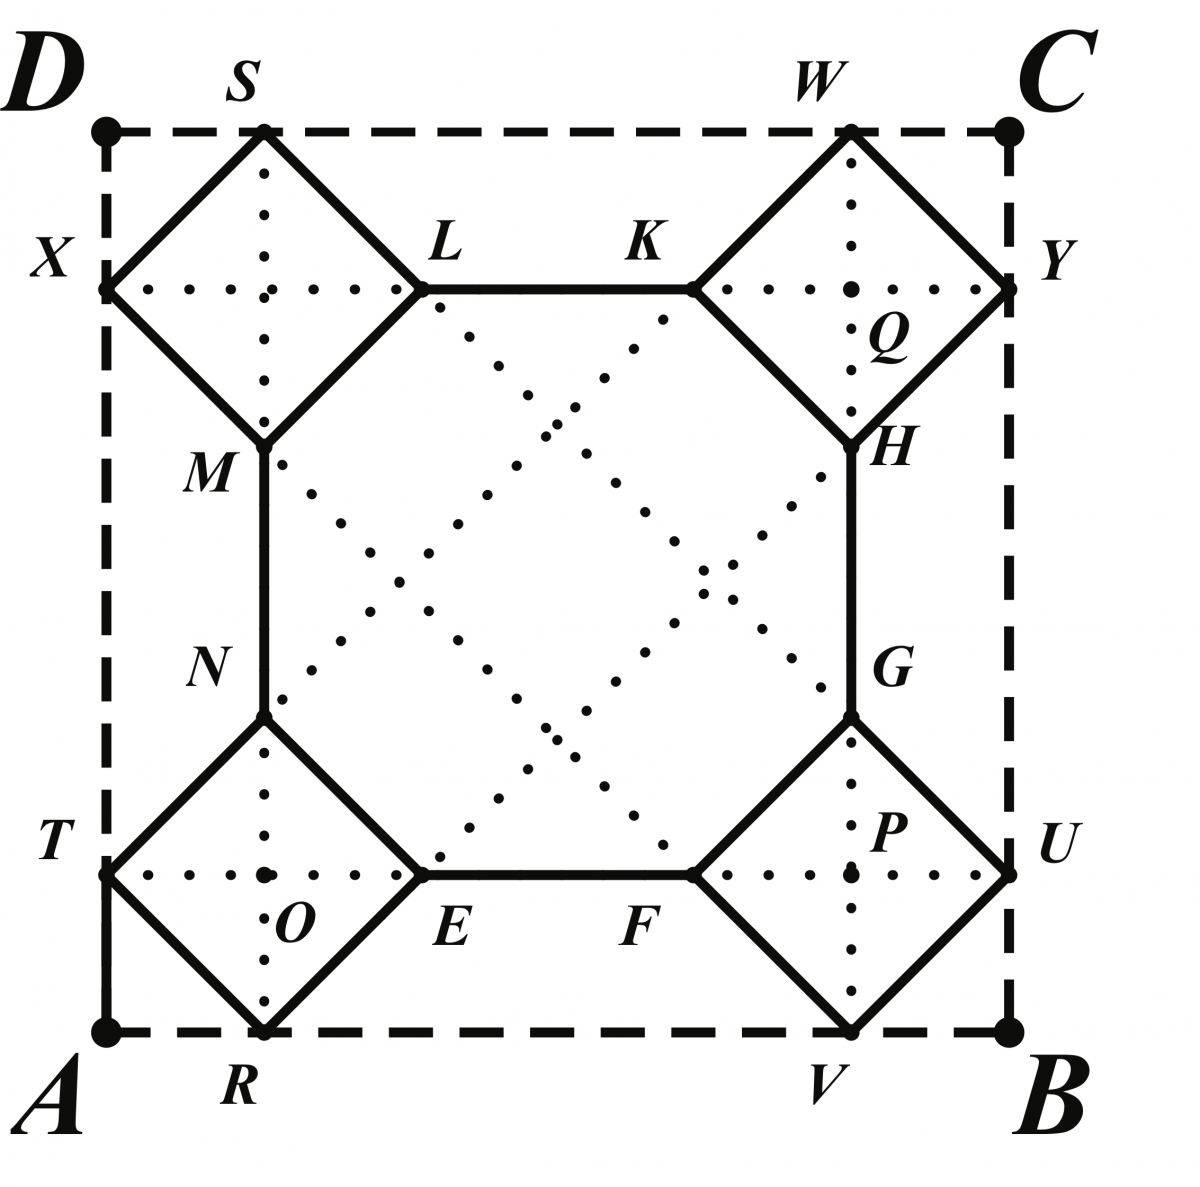 Geometrical diagram for linoleum design.